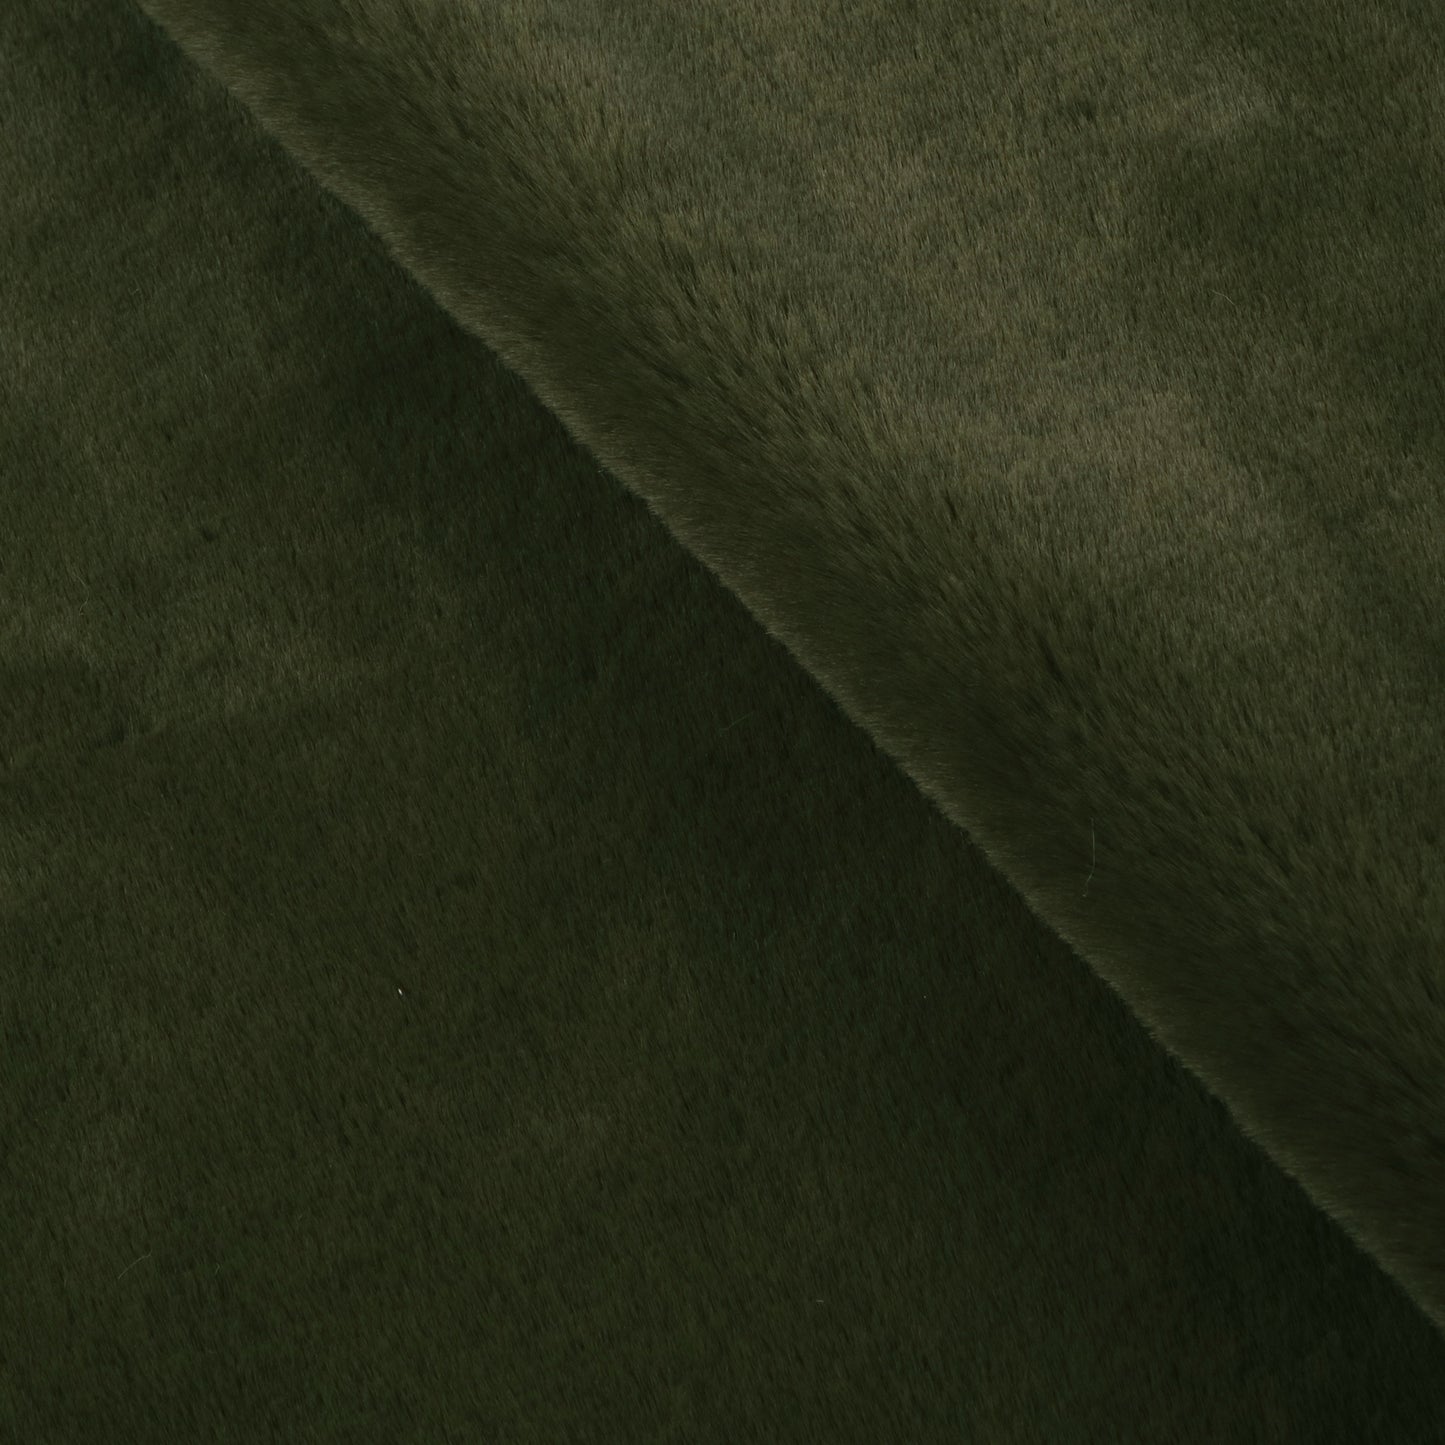 Furry Velvet Faux Leather Sheets Wholesale